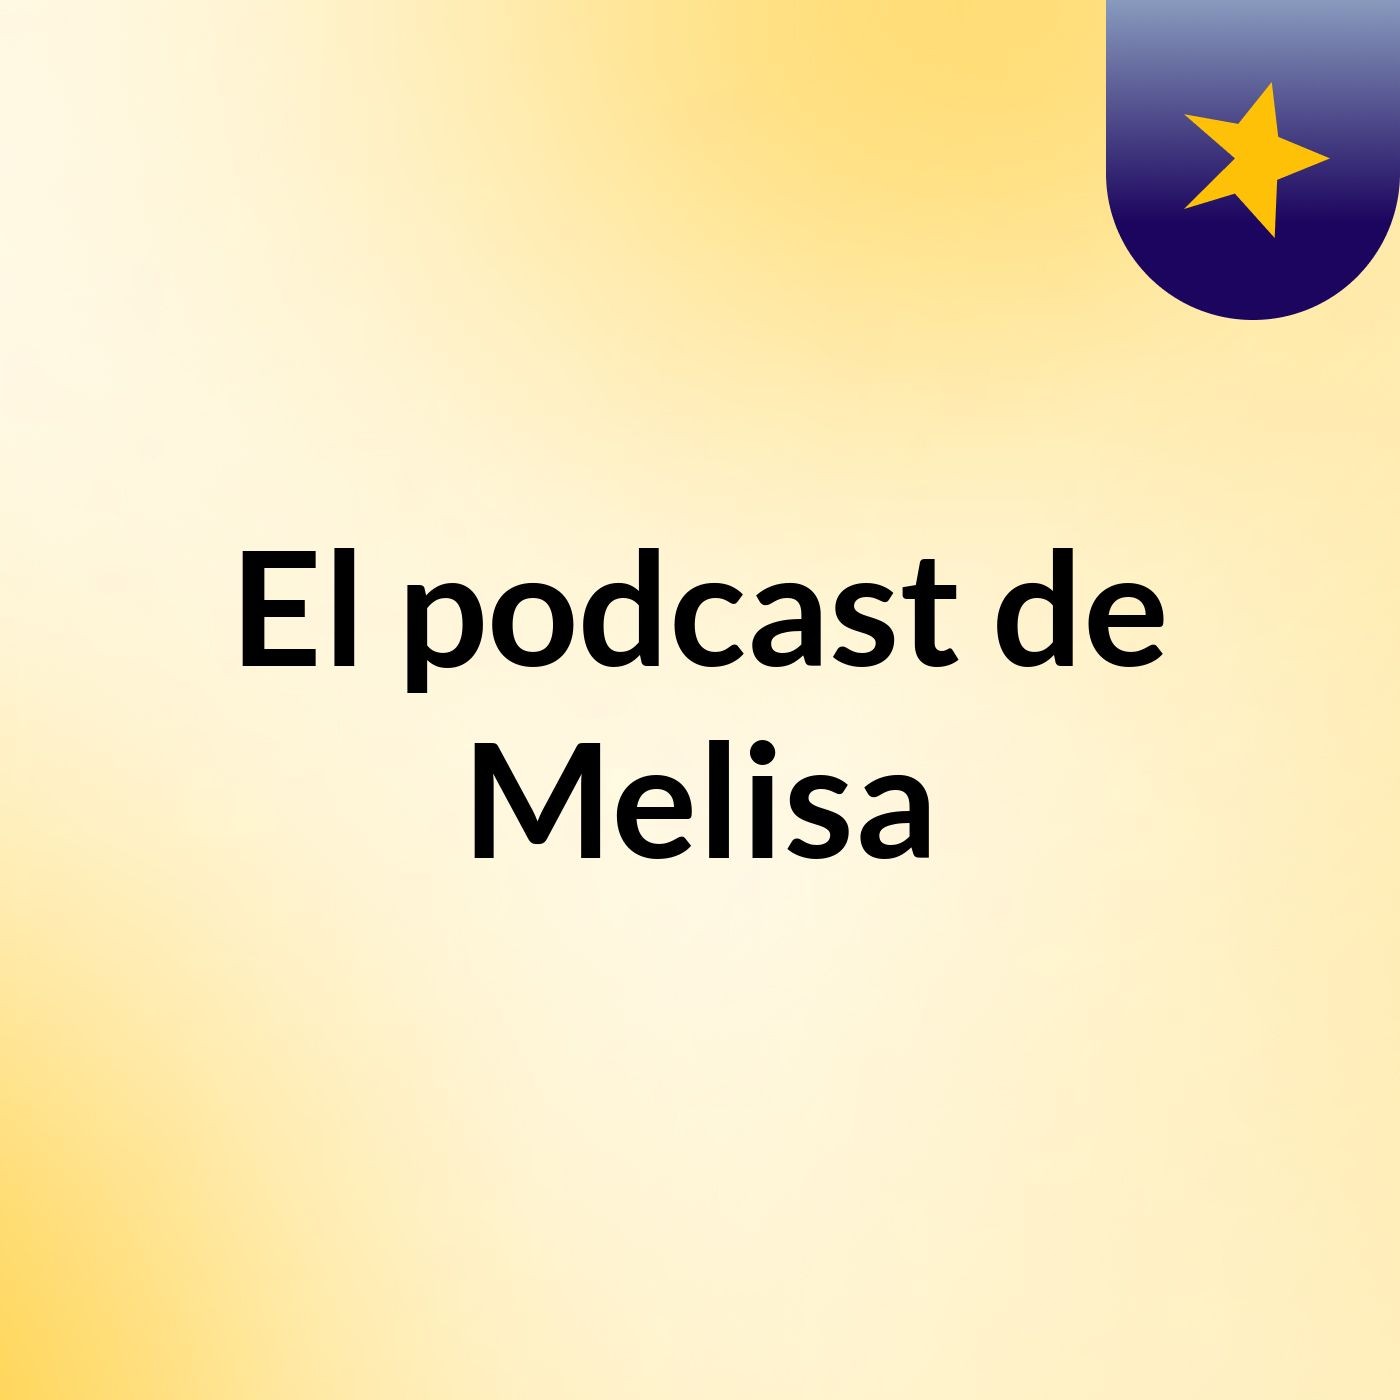 El podcast de Melisa